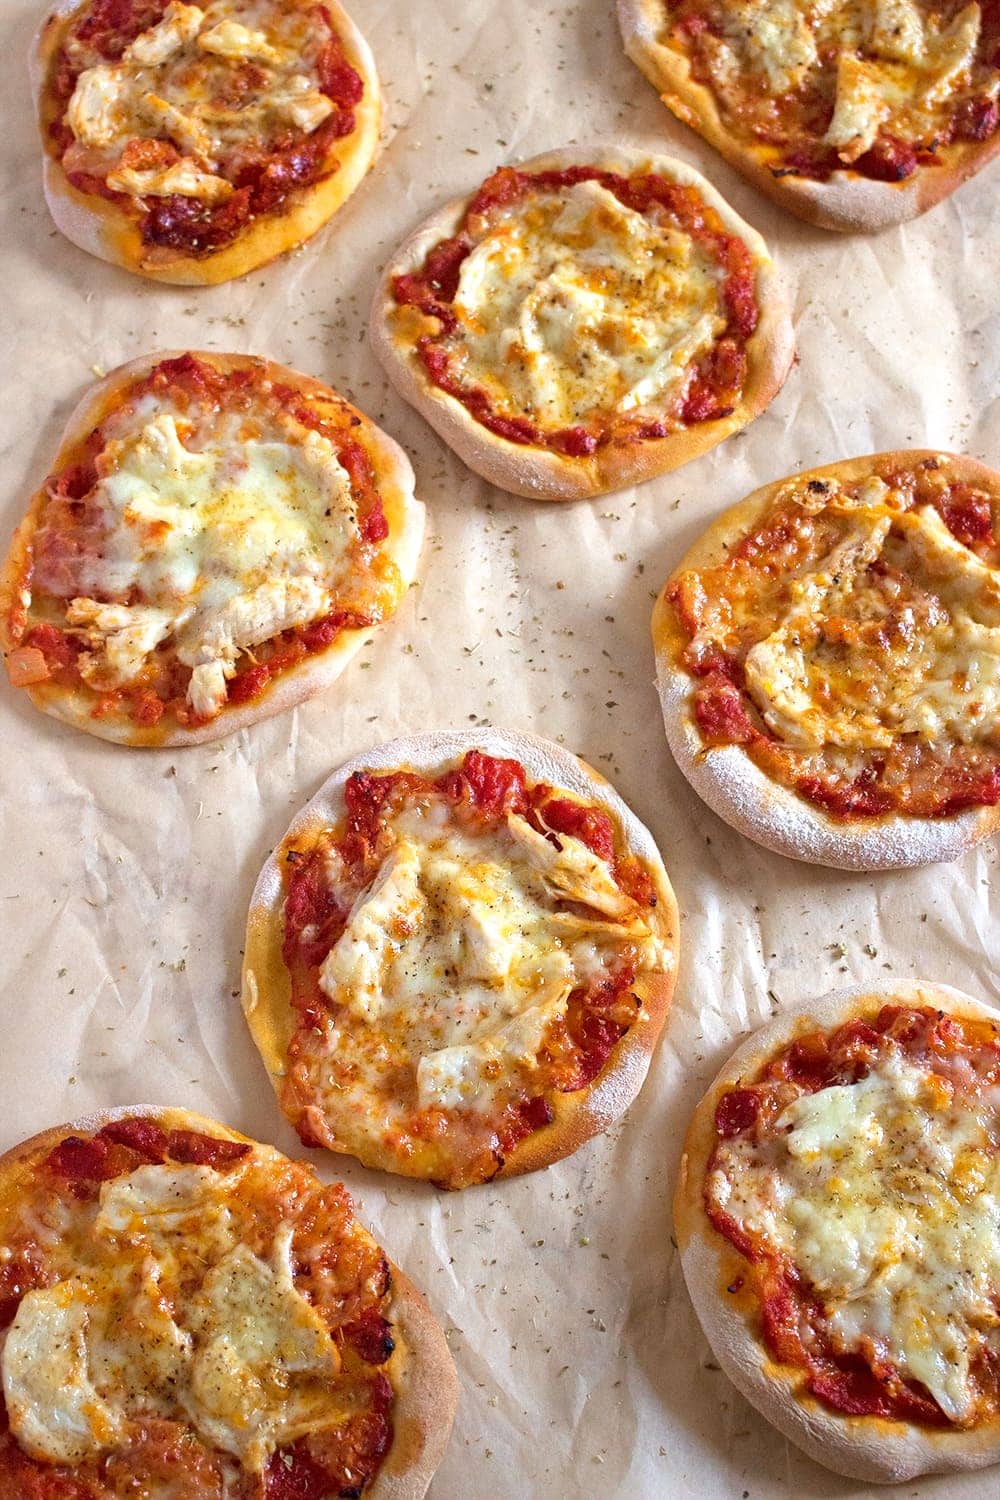 Pizzetta vừa thơm ngon hấp dẫn lại vừa là món ăn tiện lợi